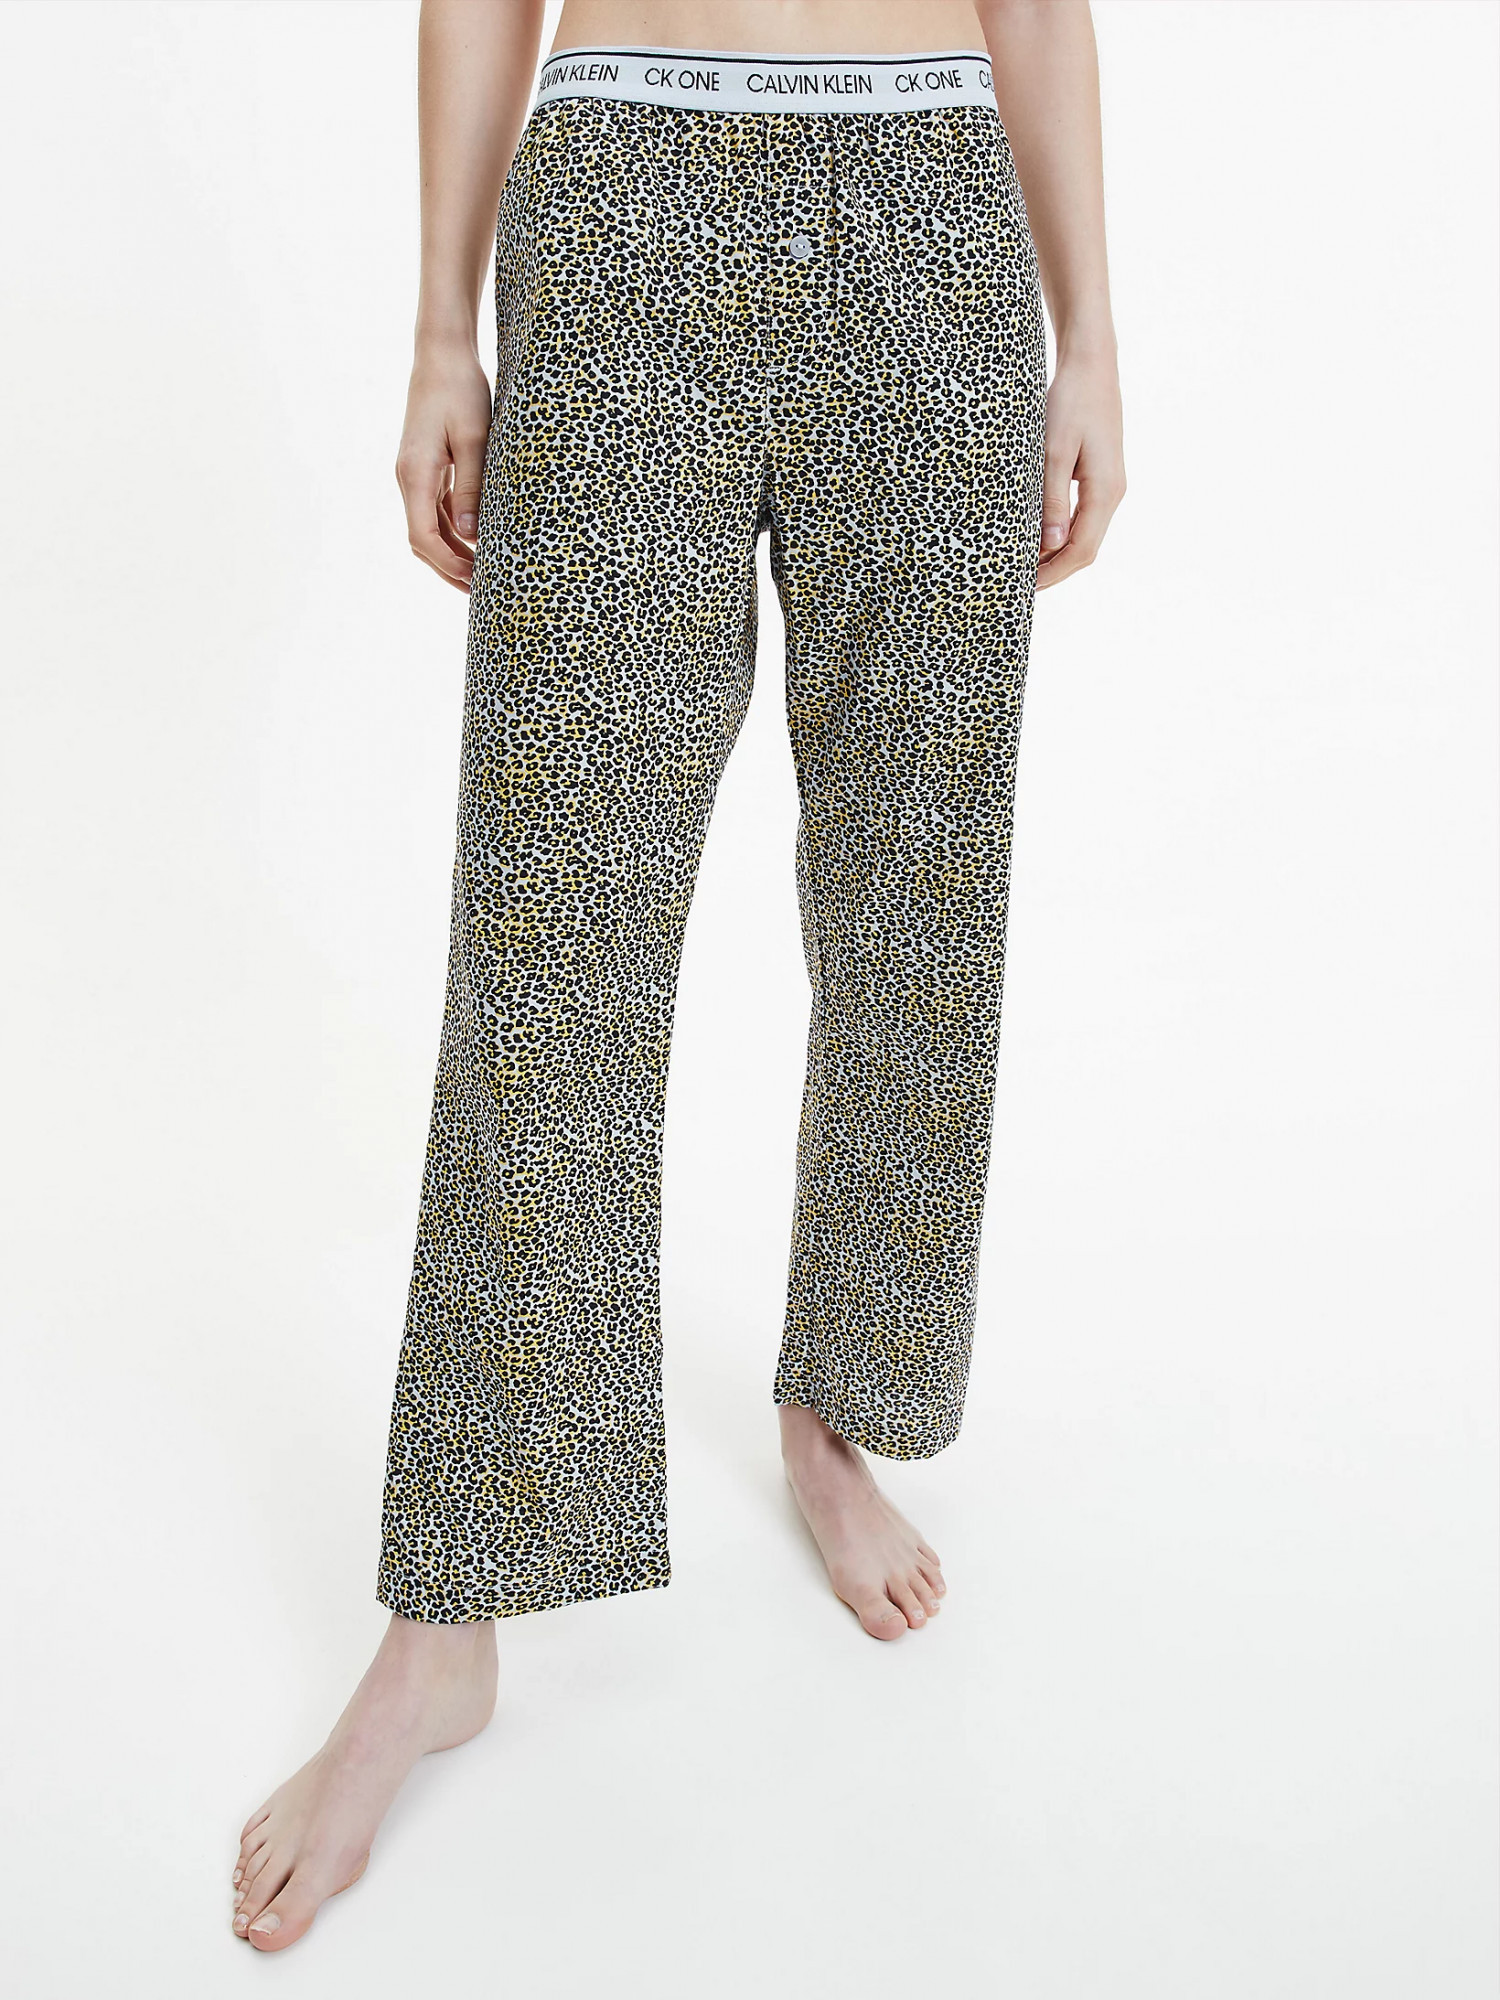 Dámské pyžamové kalhoty Fialová se zvířecím vzorem S fialový vzor model 17089255 - Calvin Klein